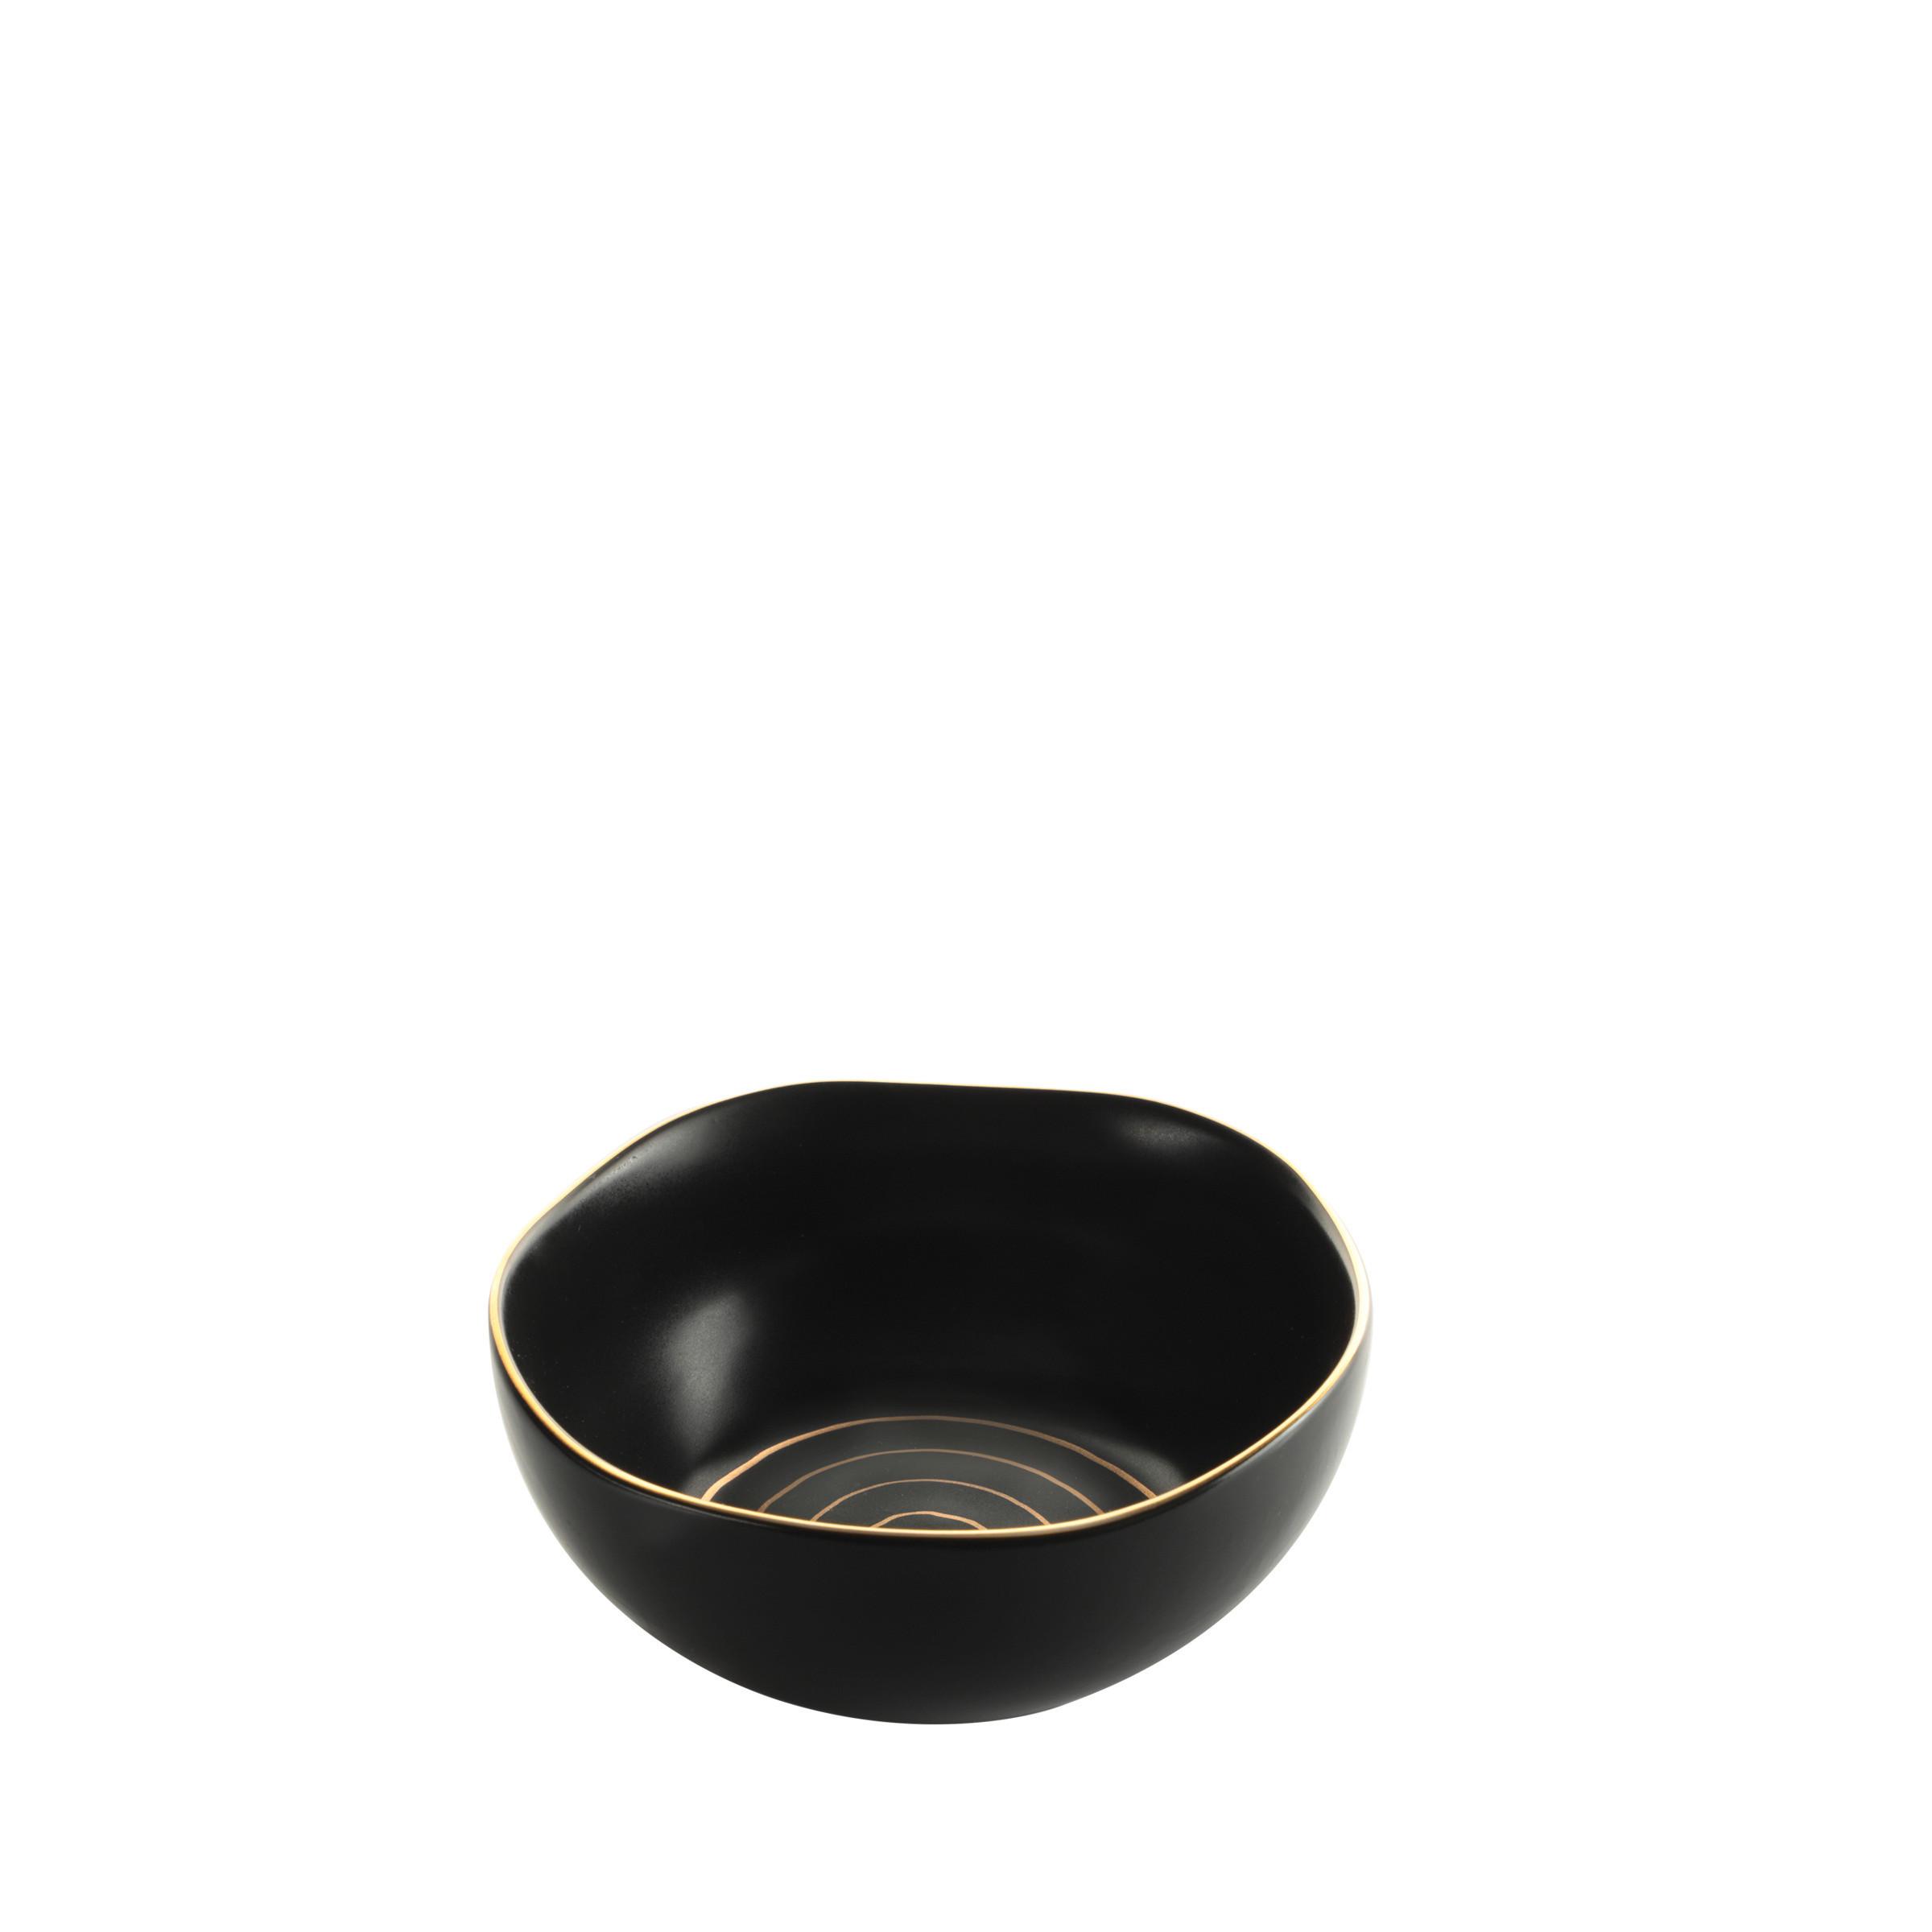 Zdjela Za Žitarice Onix - zlatne boje/crna, Modern, keramika (15/7cm) - Premium Living